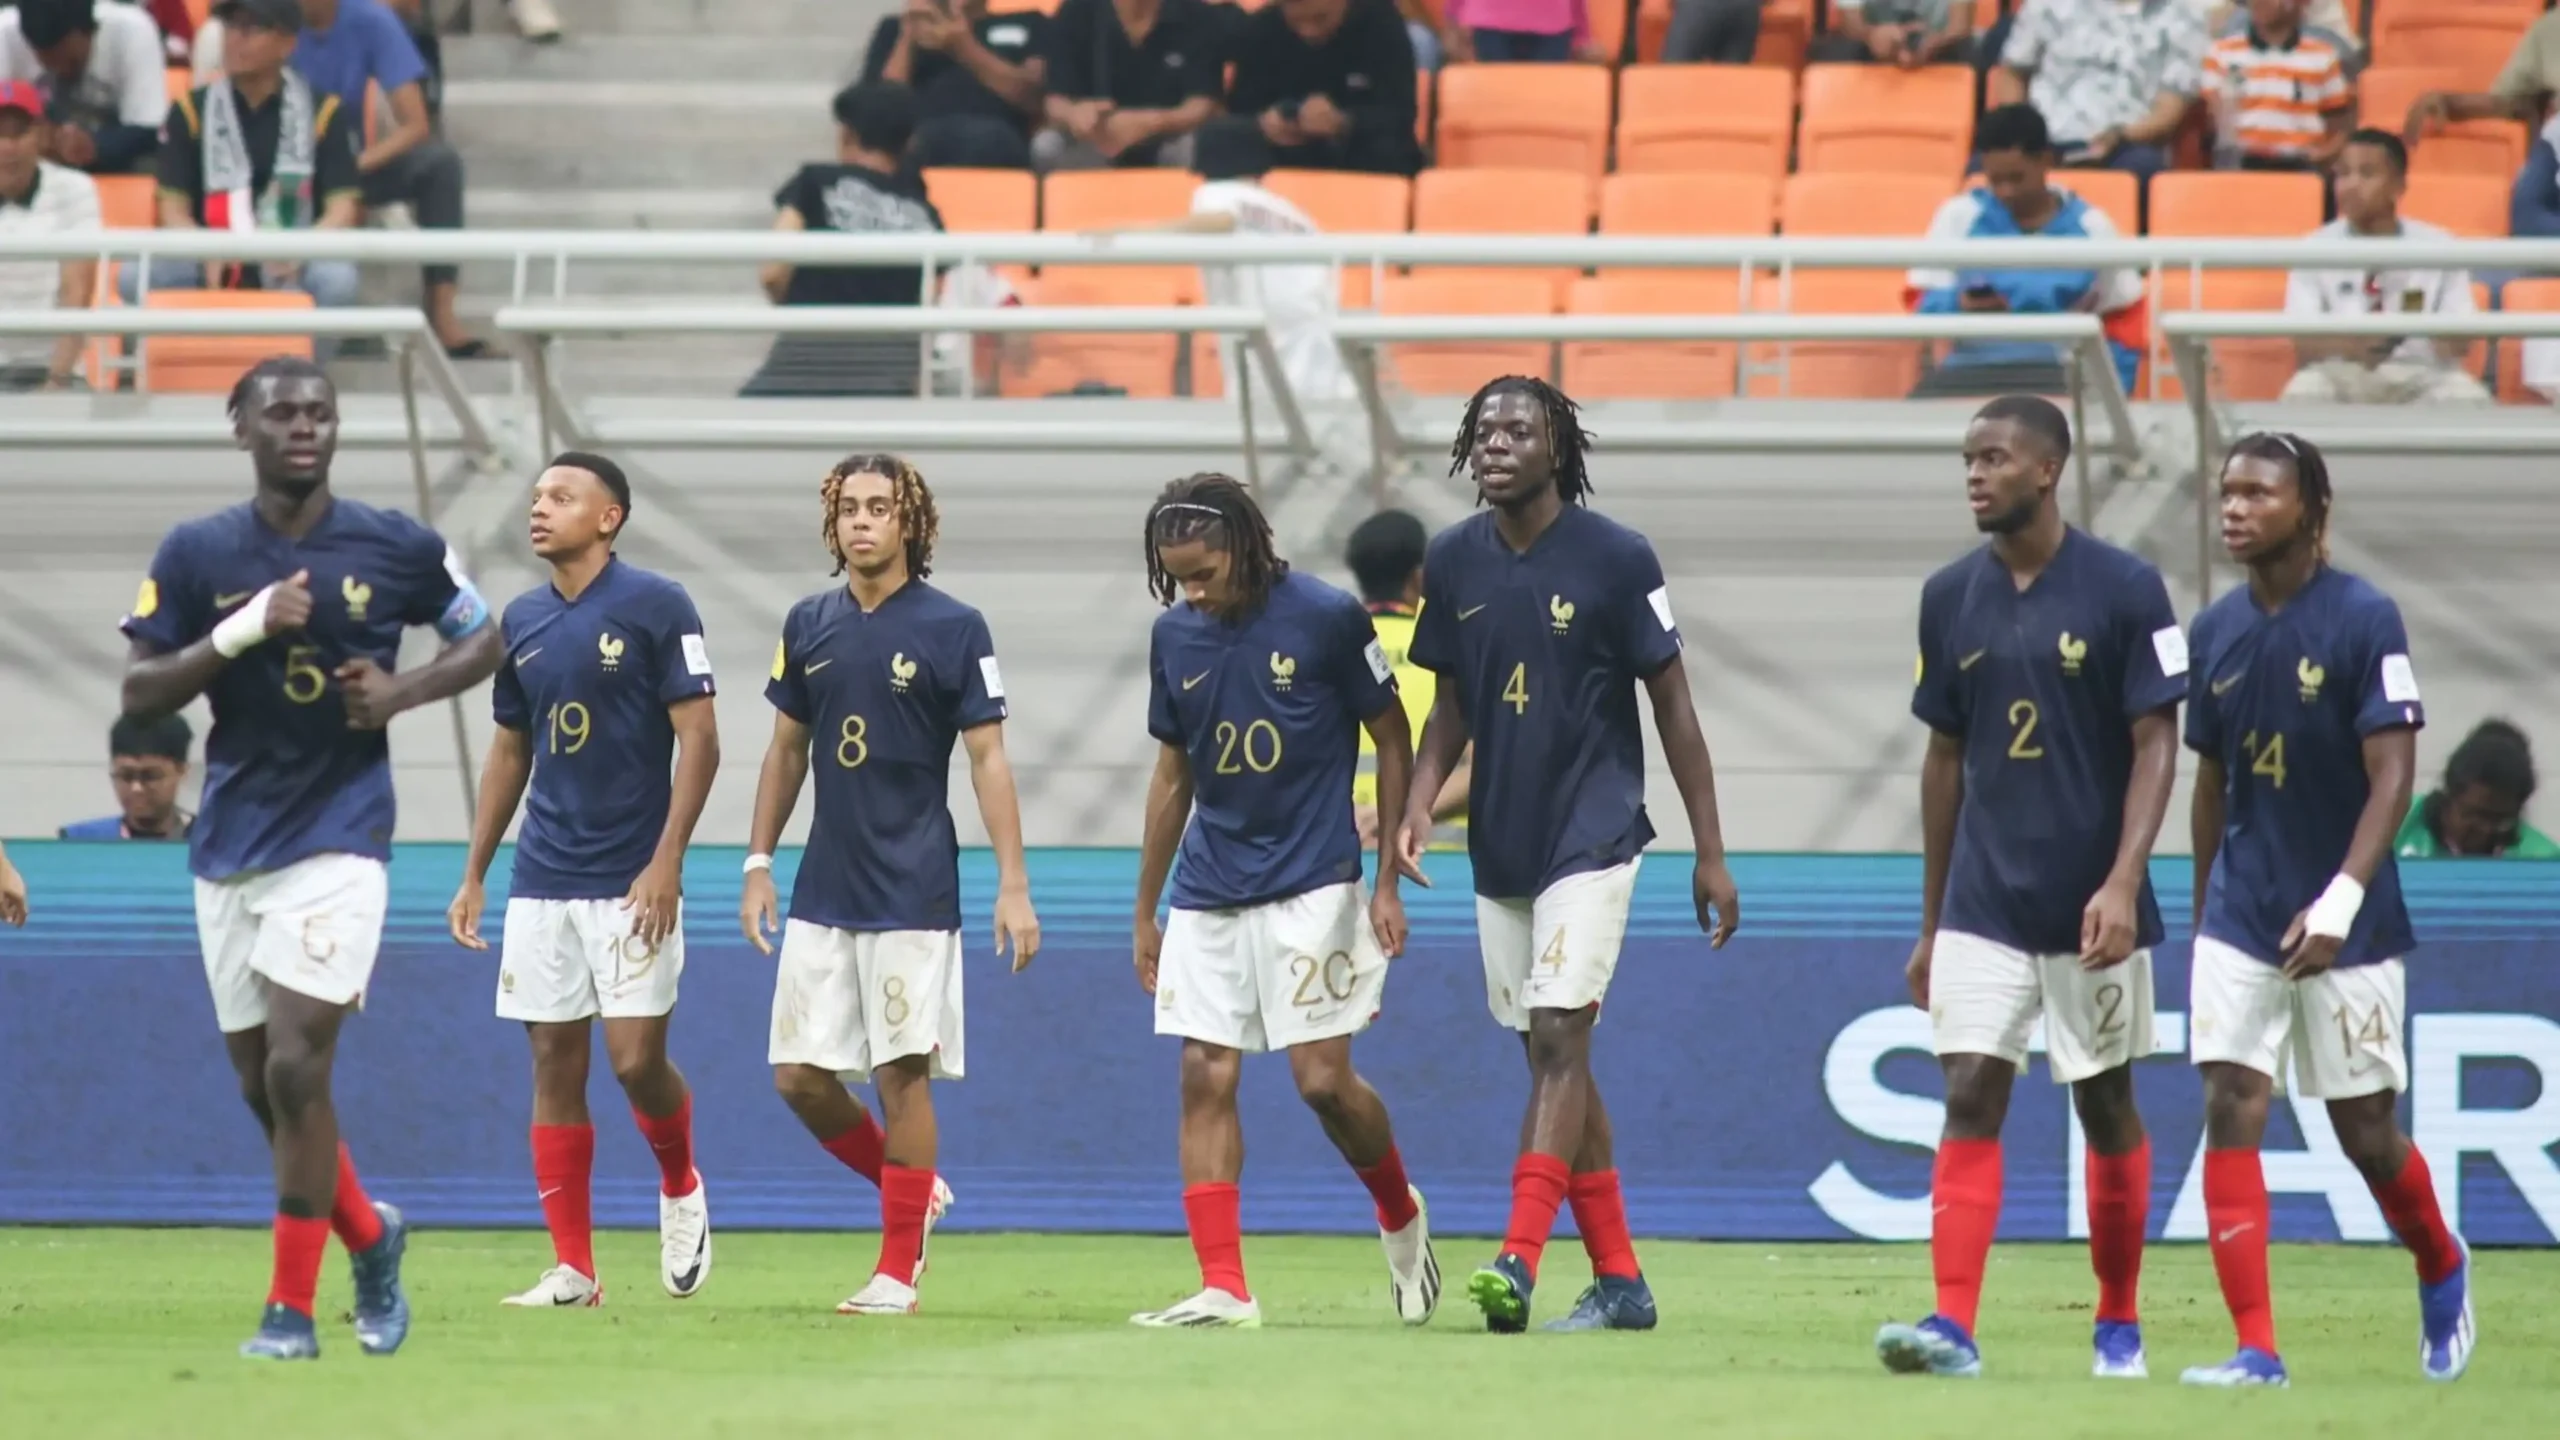 مشاهدة بث مباشر فرنسا وأوزبكستان في كأس العالم للناشئين تحت 17 عام